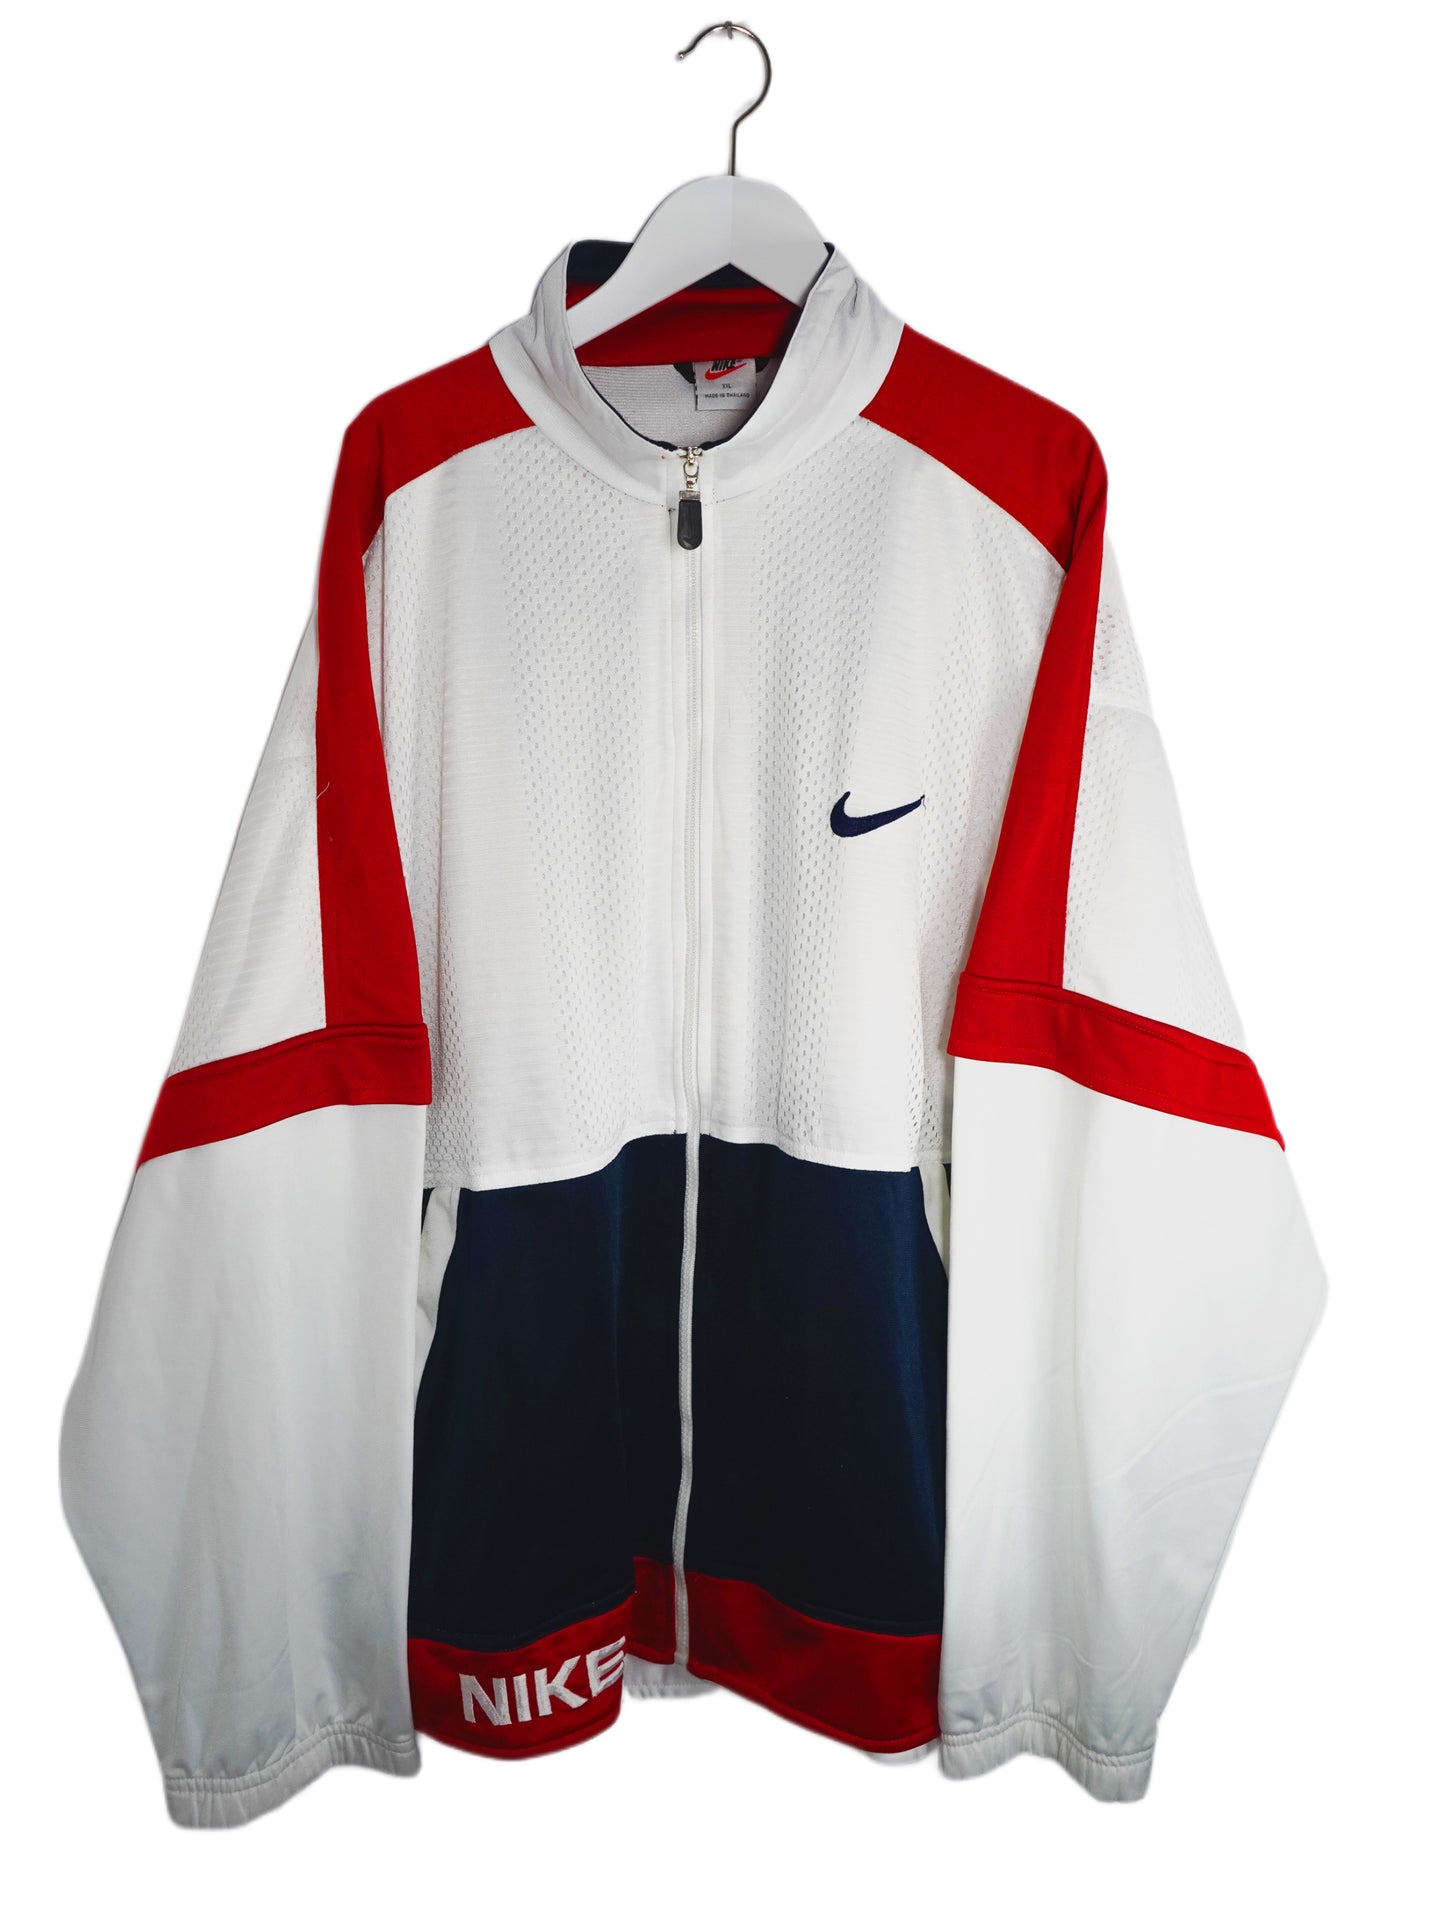 Nike Basketball Jacke Weiß, Rot, Blau